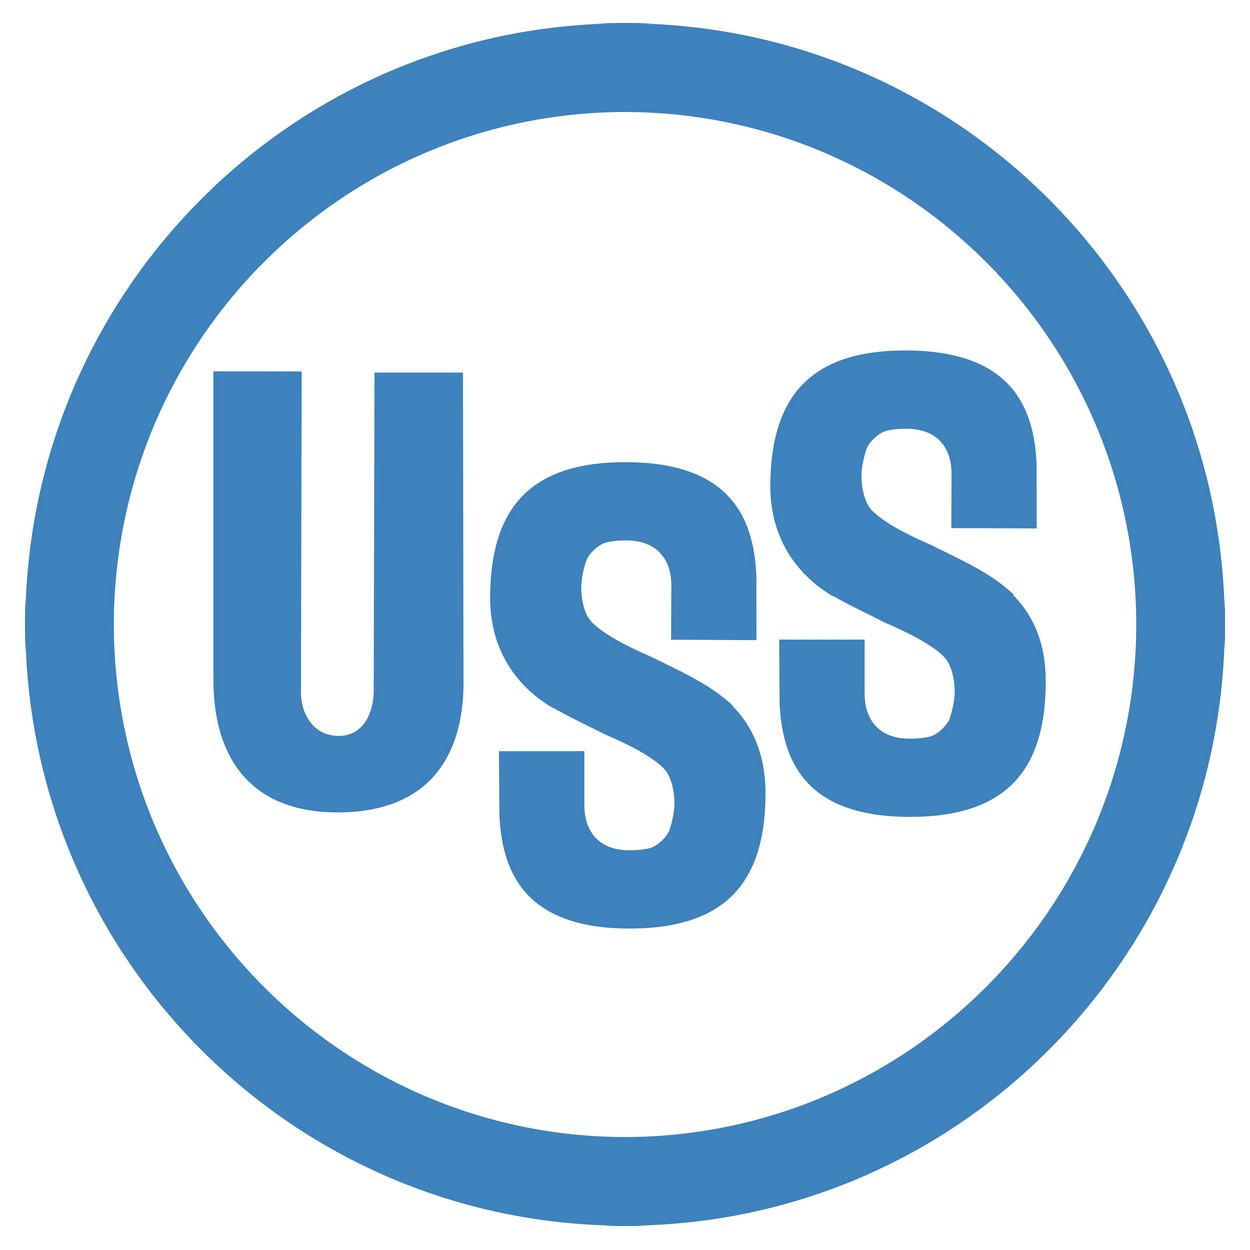 USS Logo - U.S. Steel Download Vector